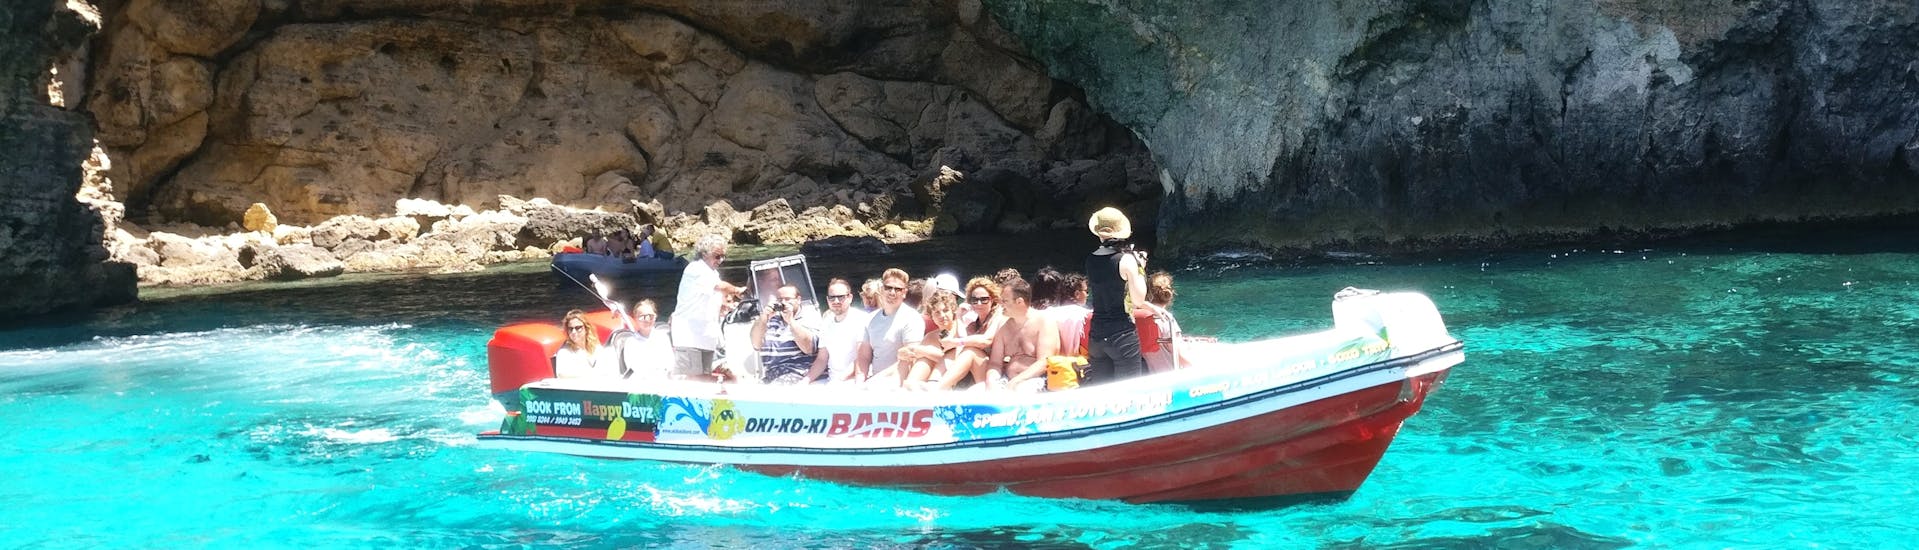 I passeggeri si godono il sole durante la gita in motoscafo alle Grotte di Comino da St. Julian.